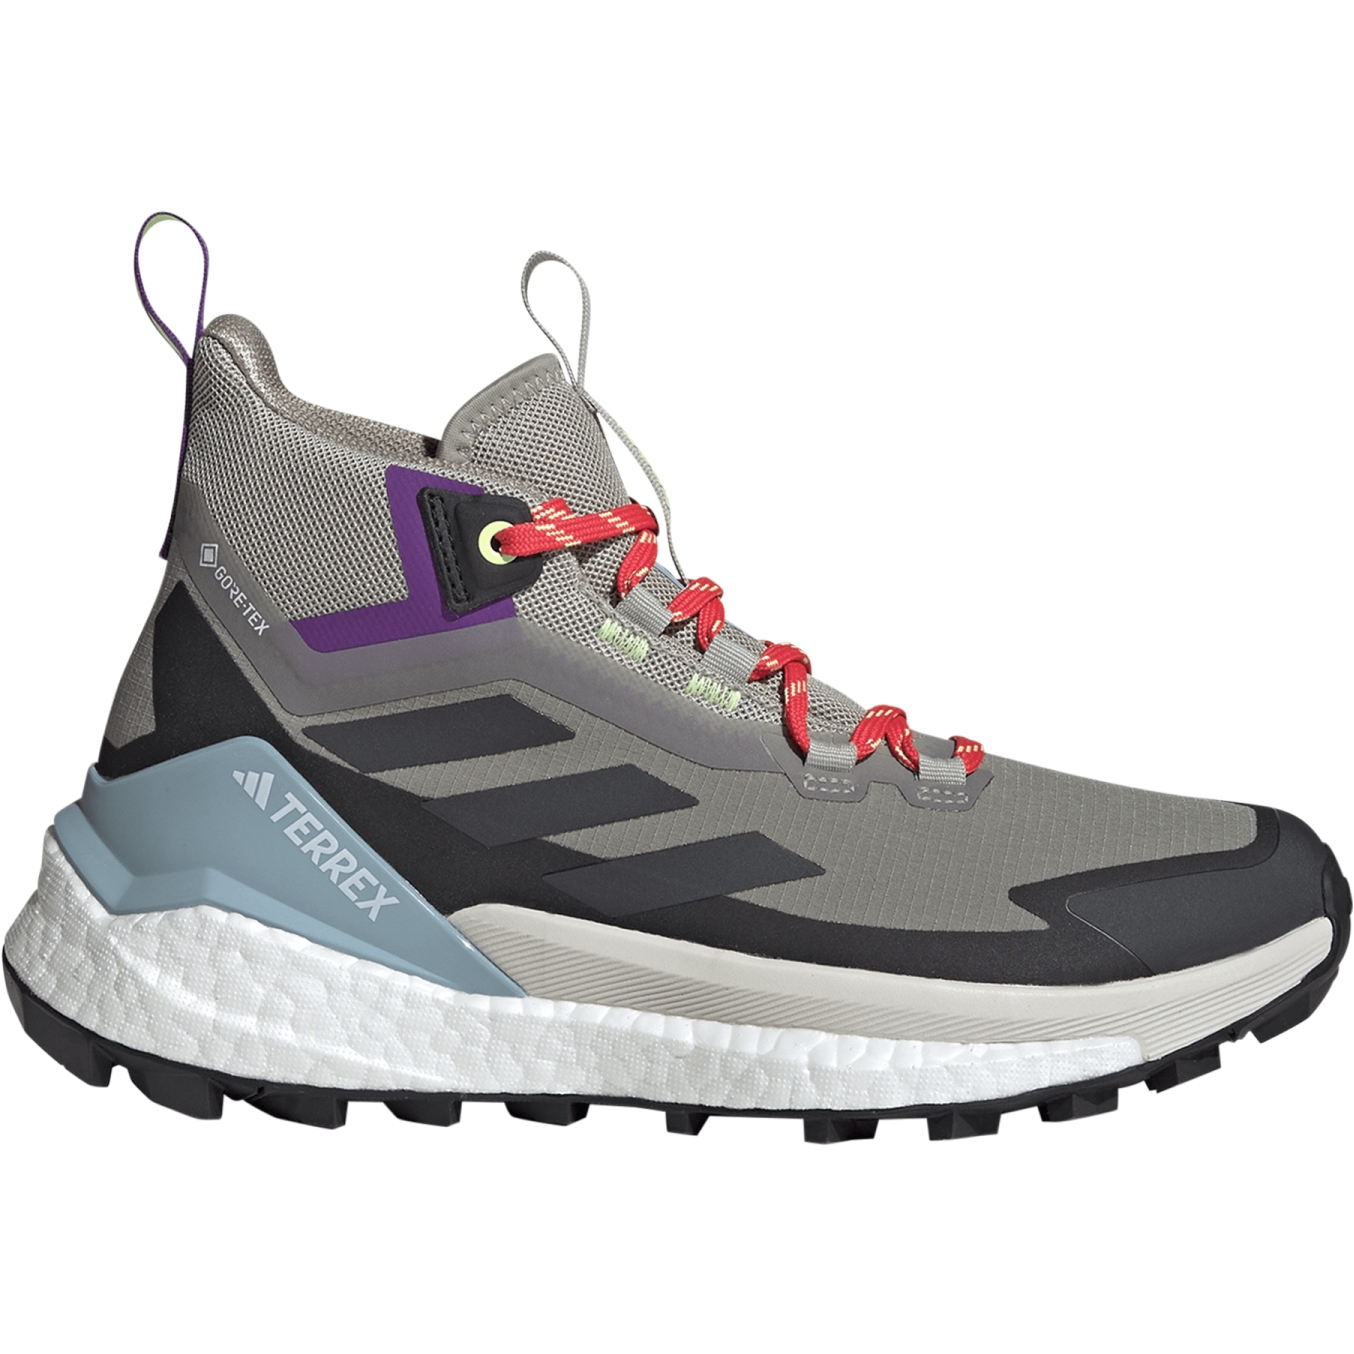 Productfoto van adidas TERREX Free Hiker 2 GORE-TEX Wandelschoenen Dames - trace cargo/carboctive purple IE3525